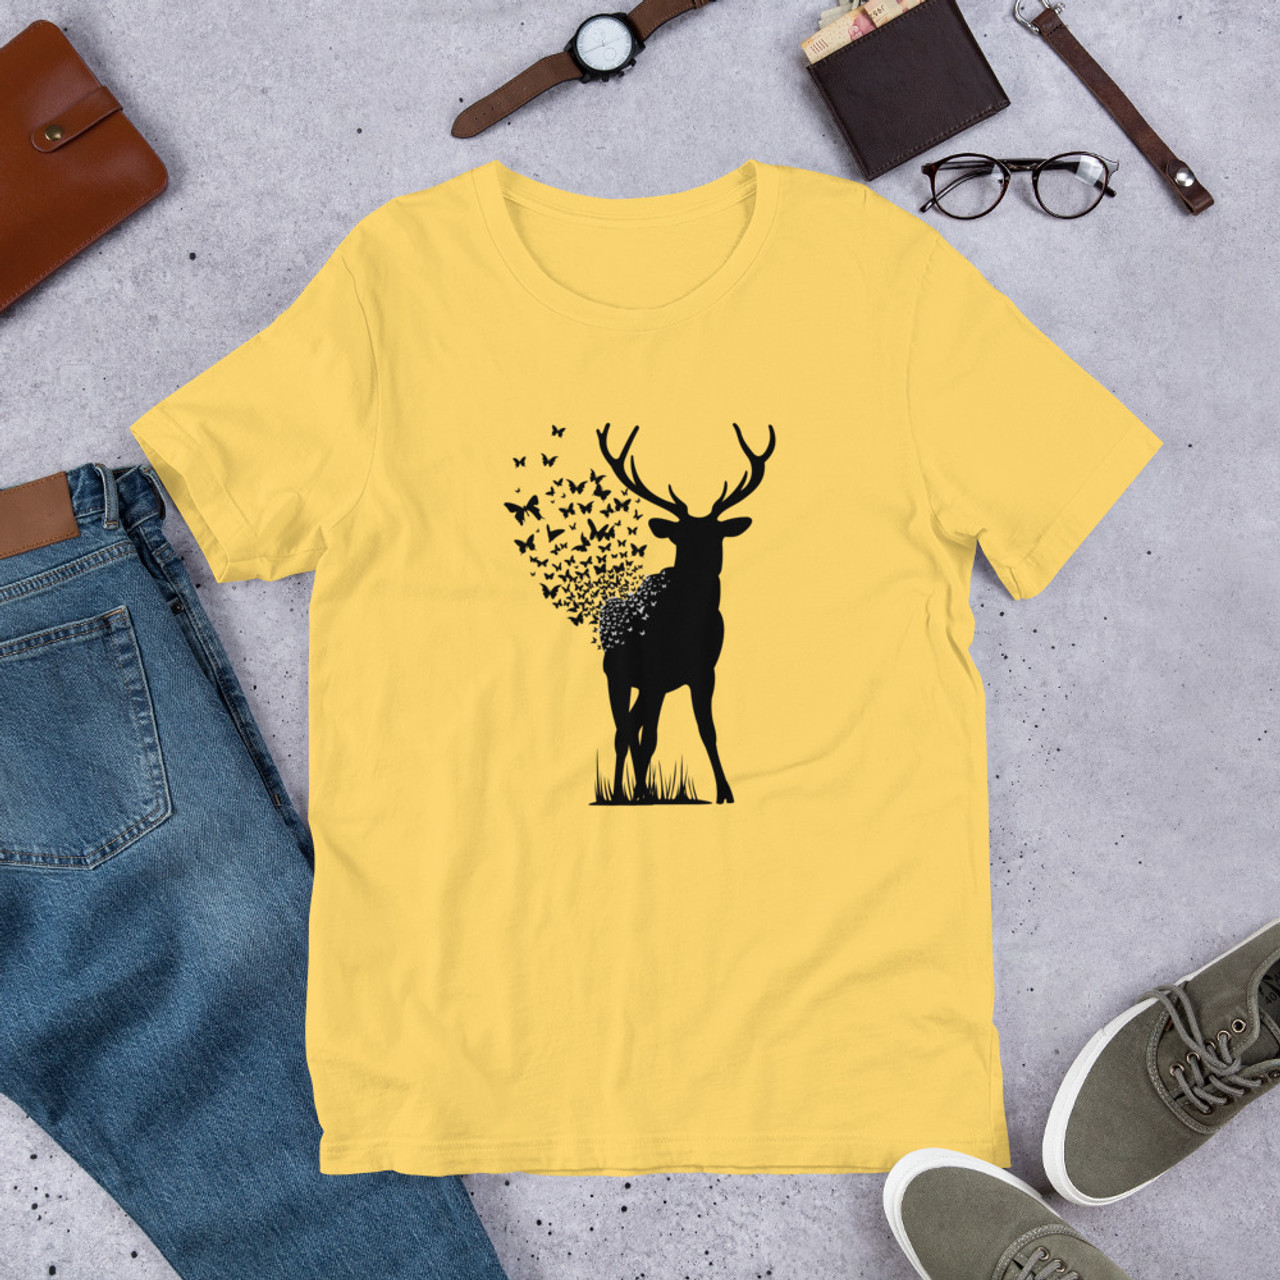 Yellow T-Shirt - Bella + Canvas 3001 Deer Butterfly